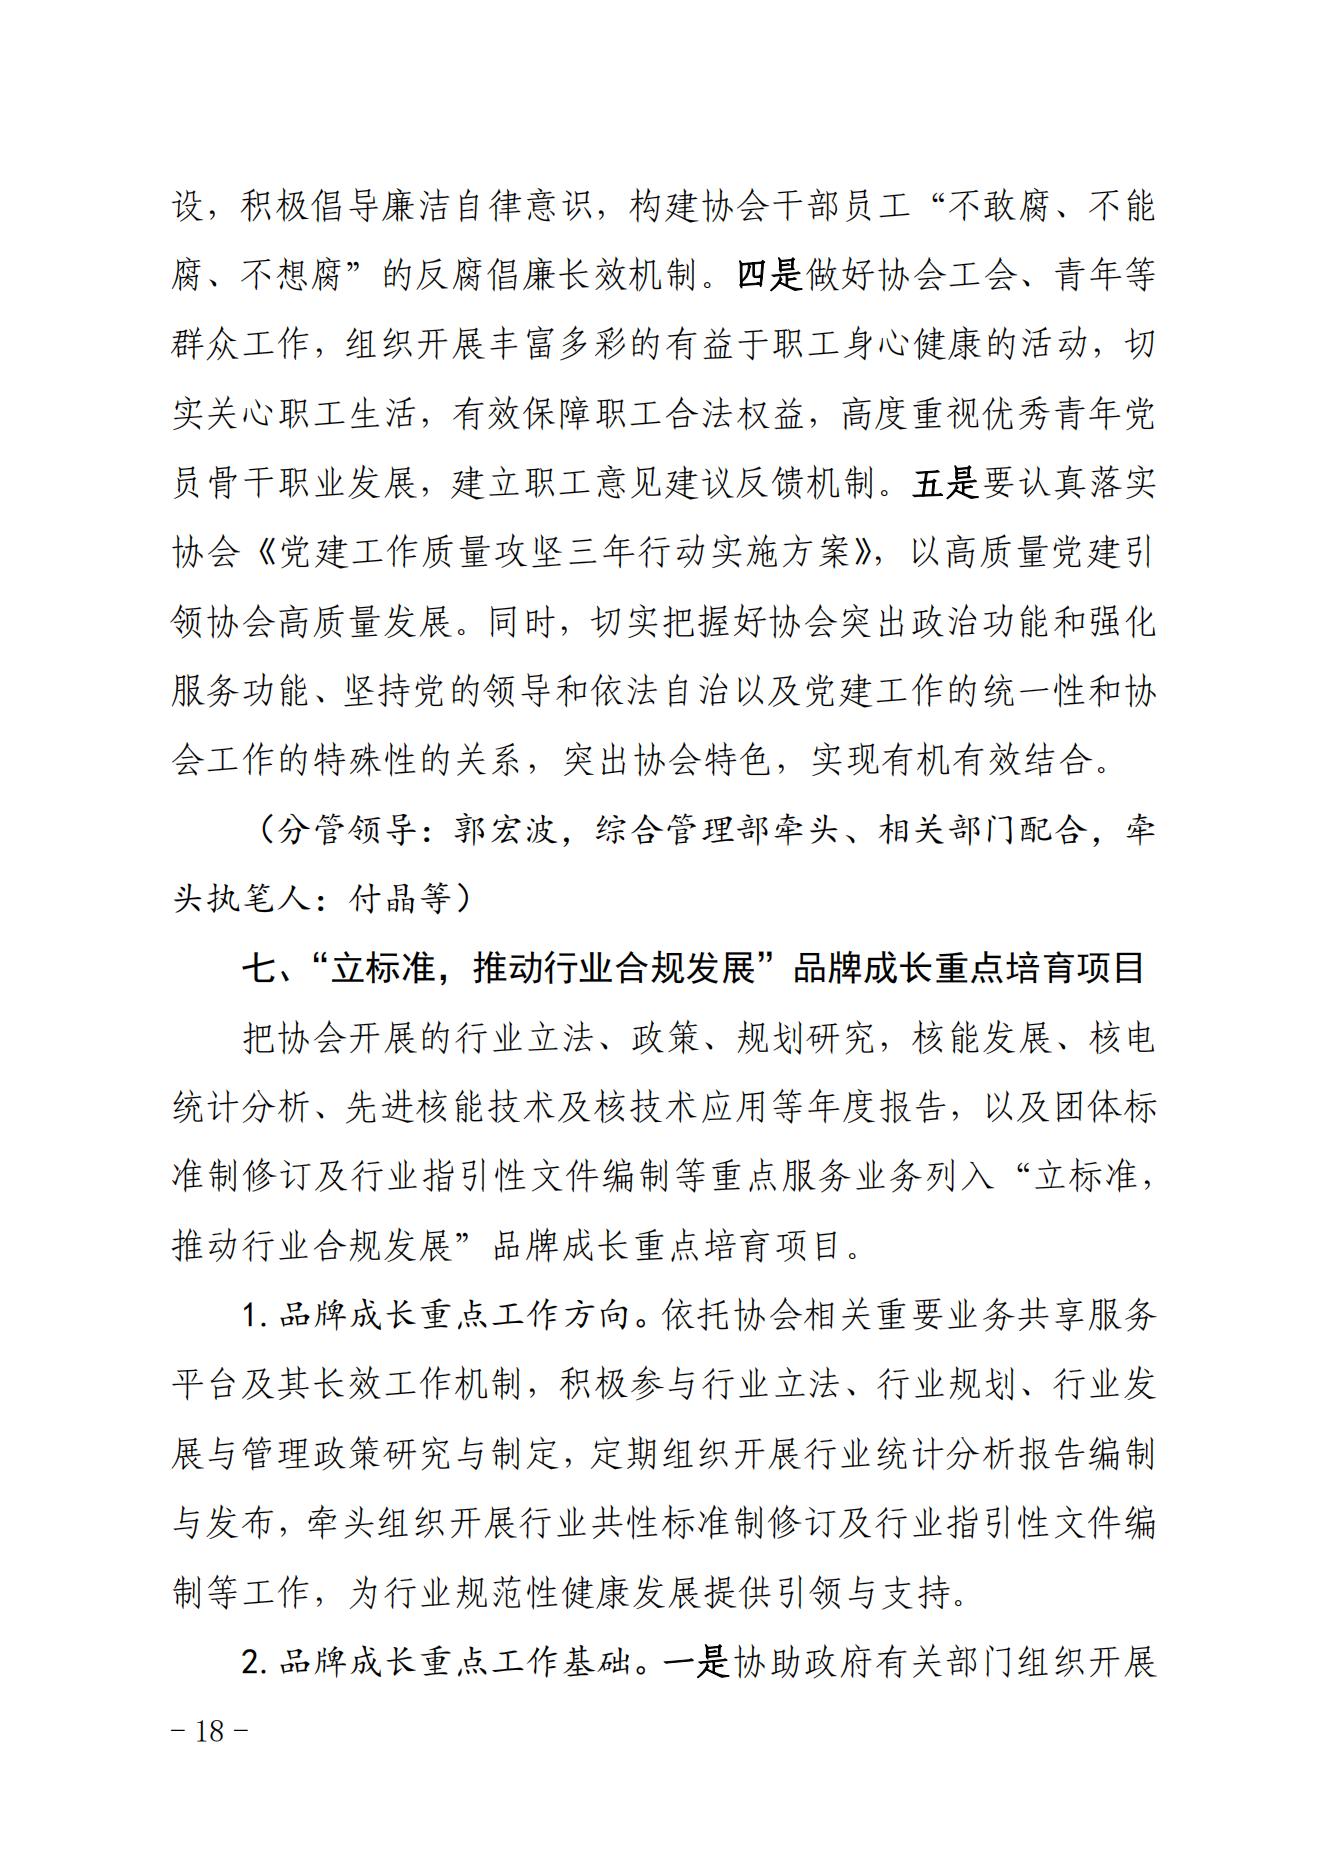 关于印发《中国核能行业协会“品牌协会成长计划”实施方案》的通知_17.jpg